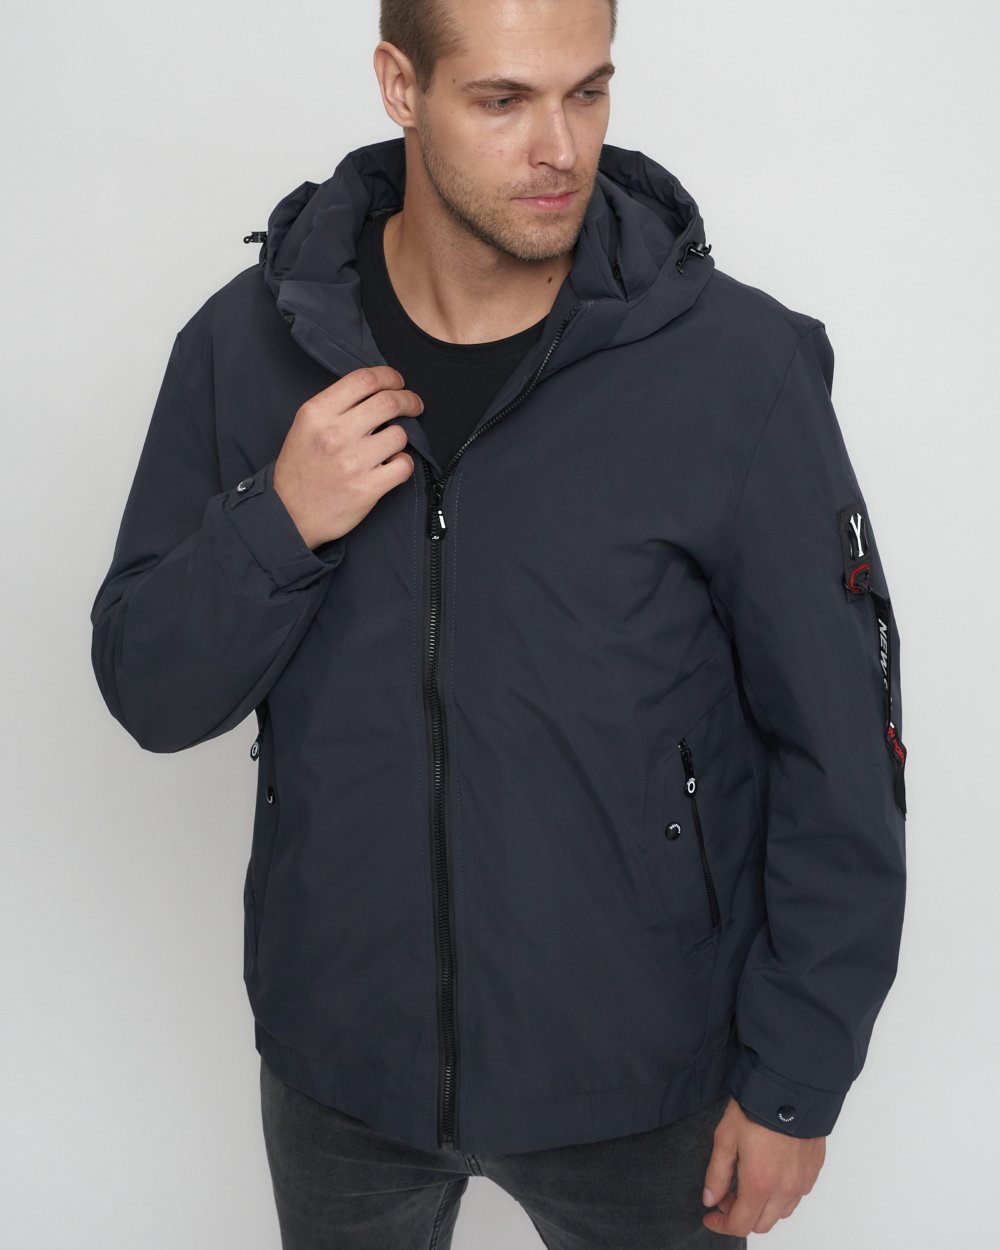 Купить куртку мужскую большого размера оптом от производителя недорого в Москве 88657TC 1